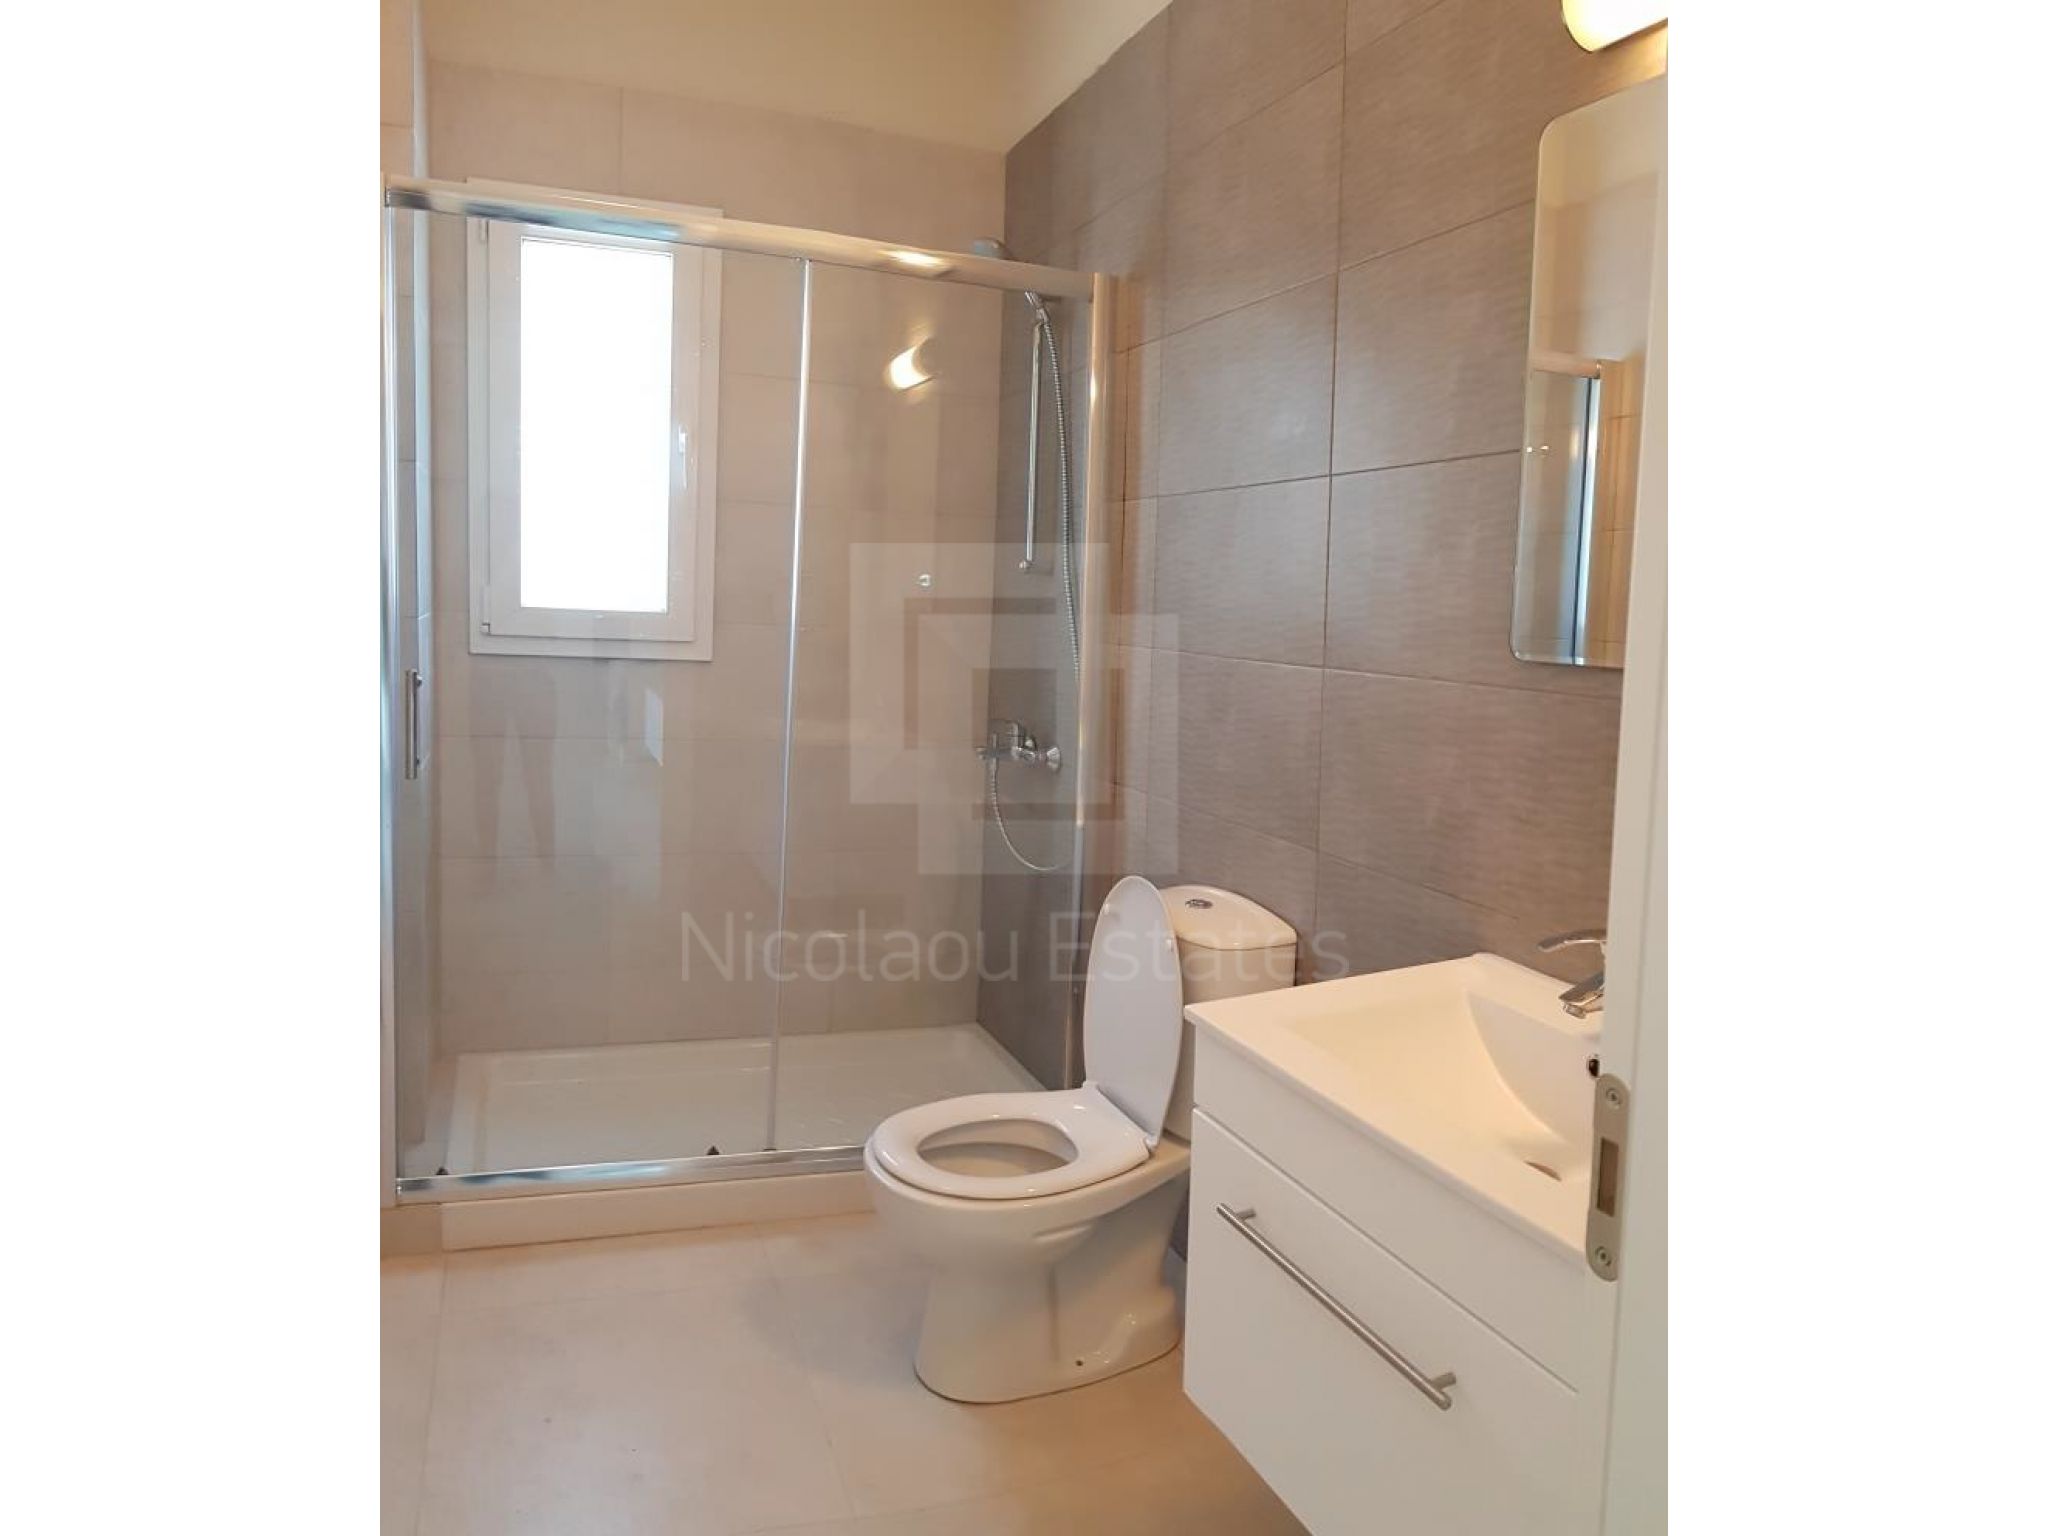 https://www.propertiescy.com/images/uploads/listings/large/14193-1592900528_bathroom-1.jpg